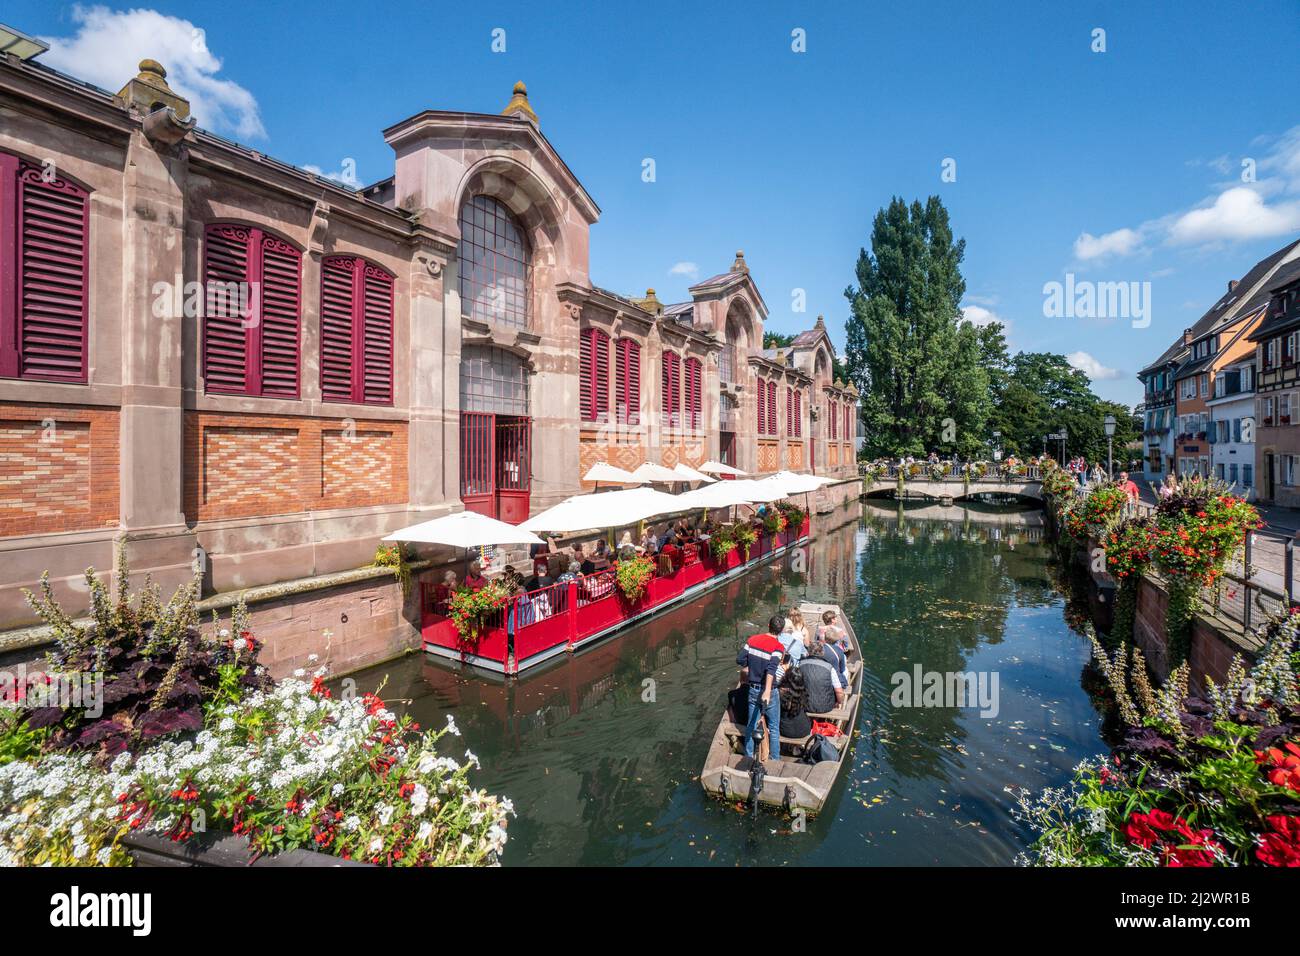 Sala de mercado en la pequeña Venecia, barco de madera con los turistas, canal, Colmar, Alsacia, Francia, Europa Foto de stock